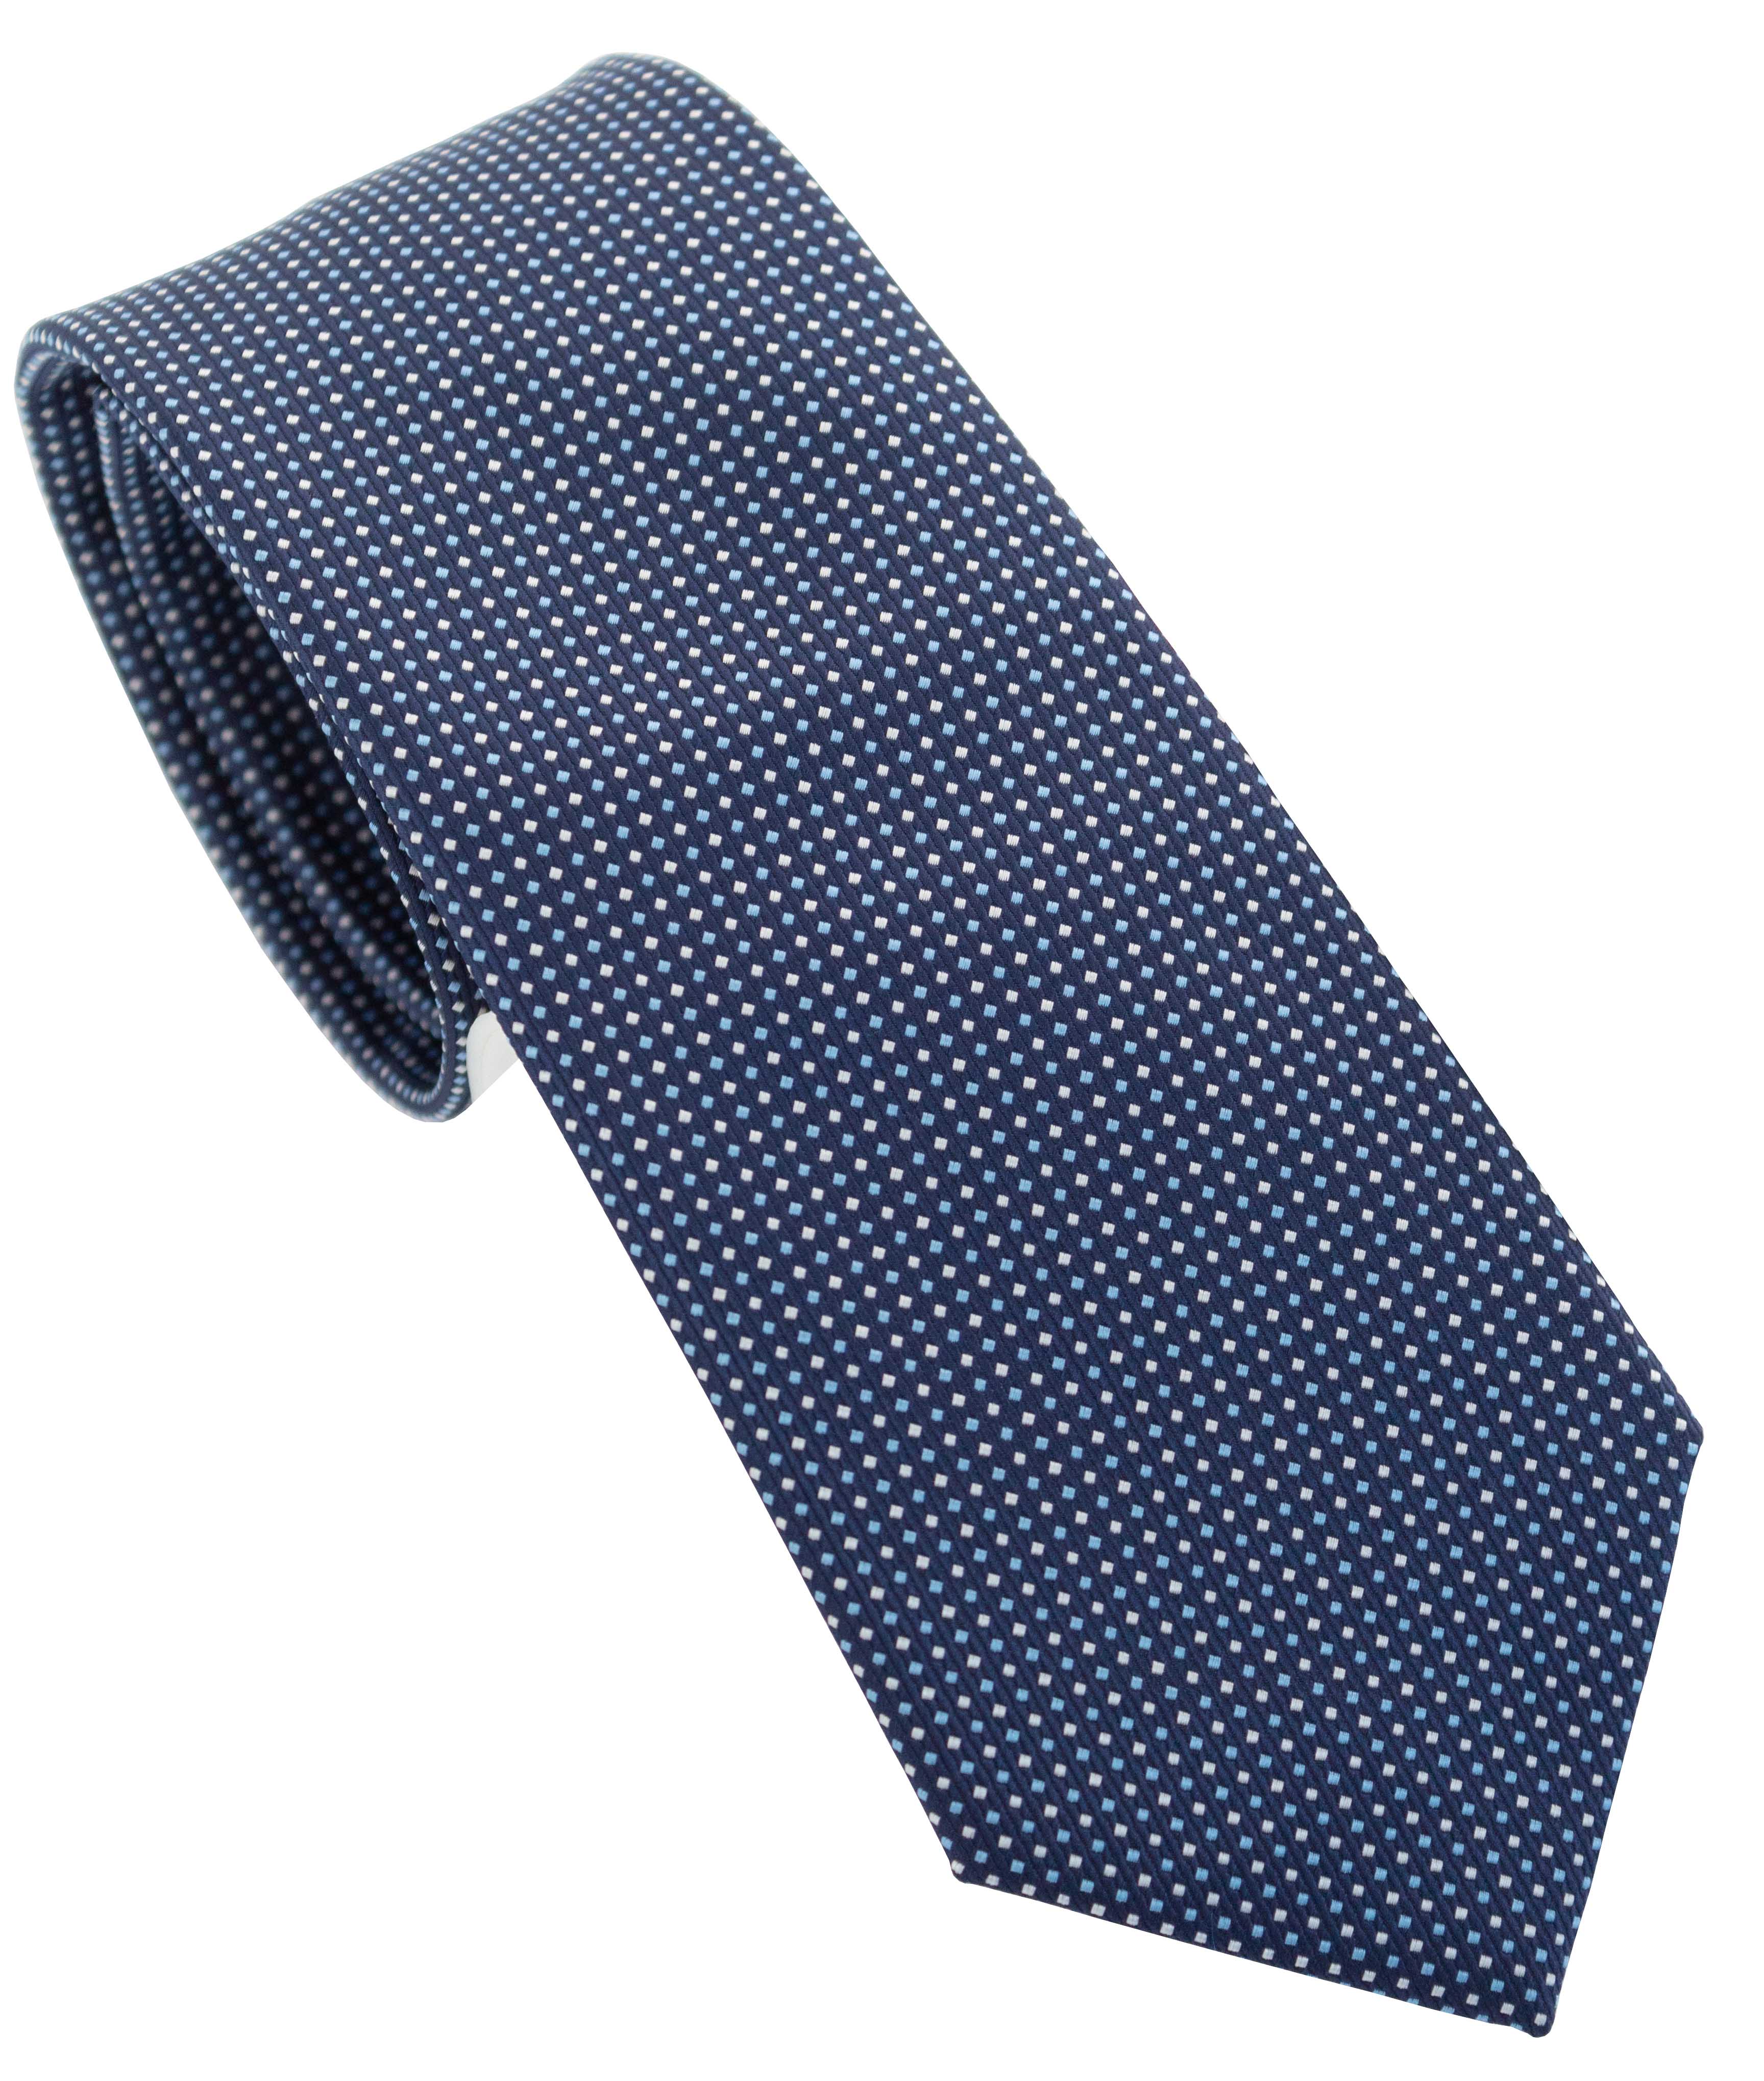 corbata-oscar-de-la-renta-estampado-p-caballeros-1